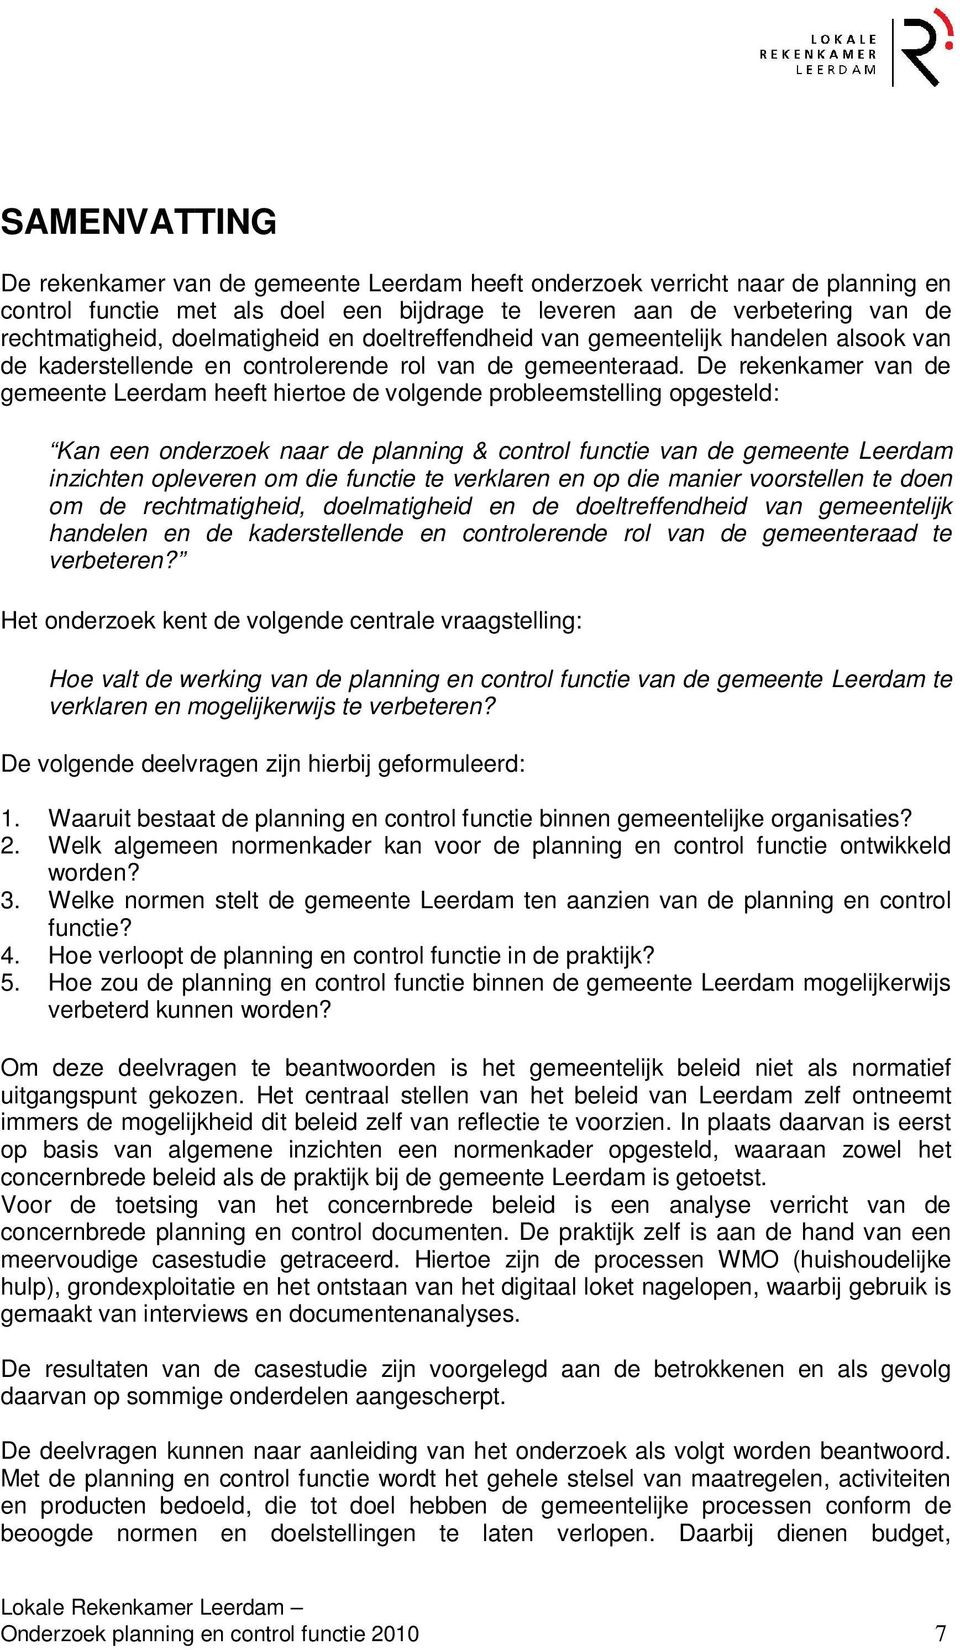 De rekenkamer van de gemeente Leerdam heeft hiertoe de volgende probleemstelling opgesteld: Kan een onderzoek naar de planning & control functie van de gemeente Leerdam inzichten opleveren om die